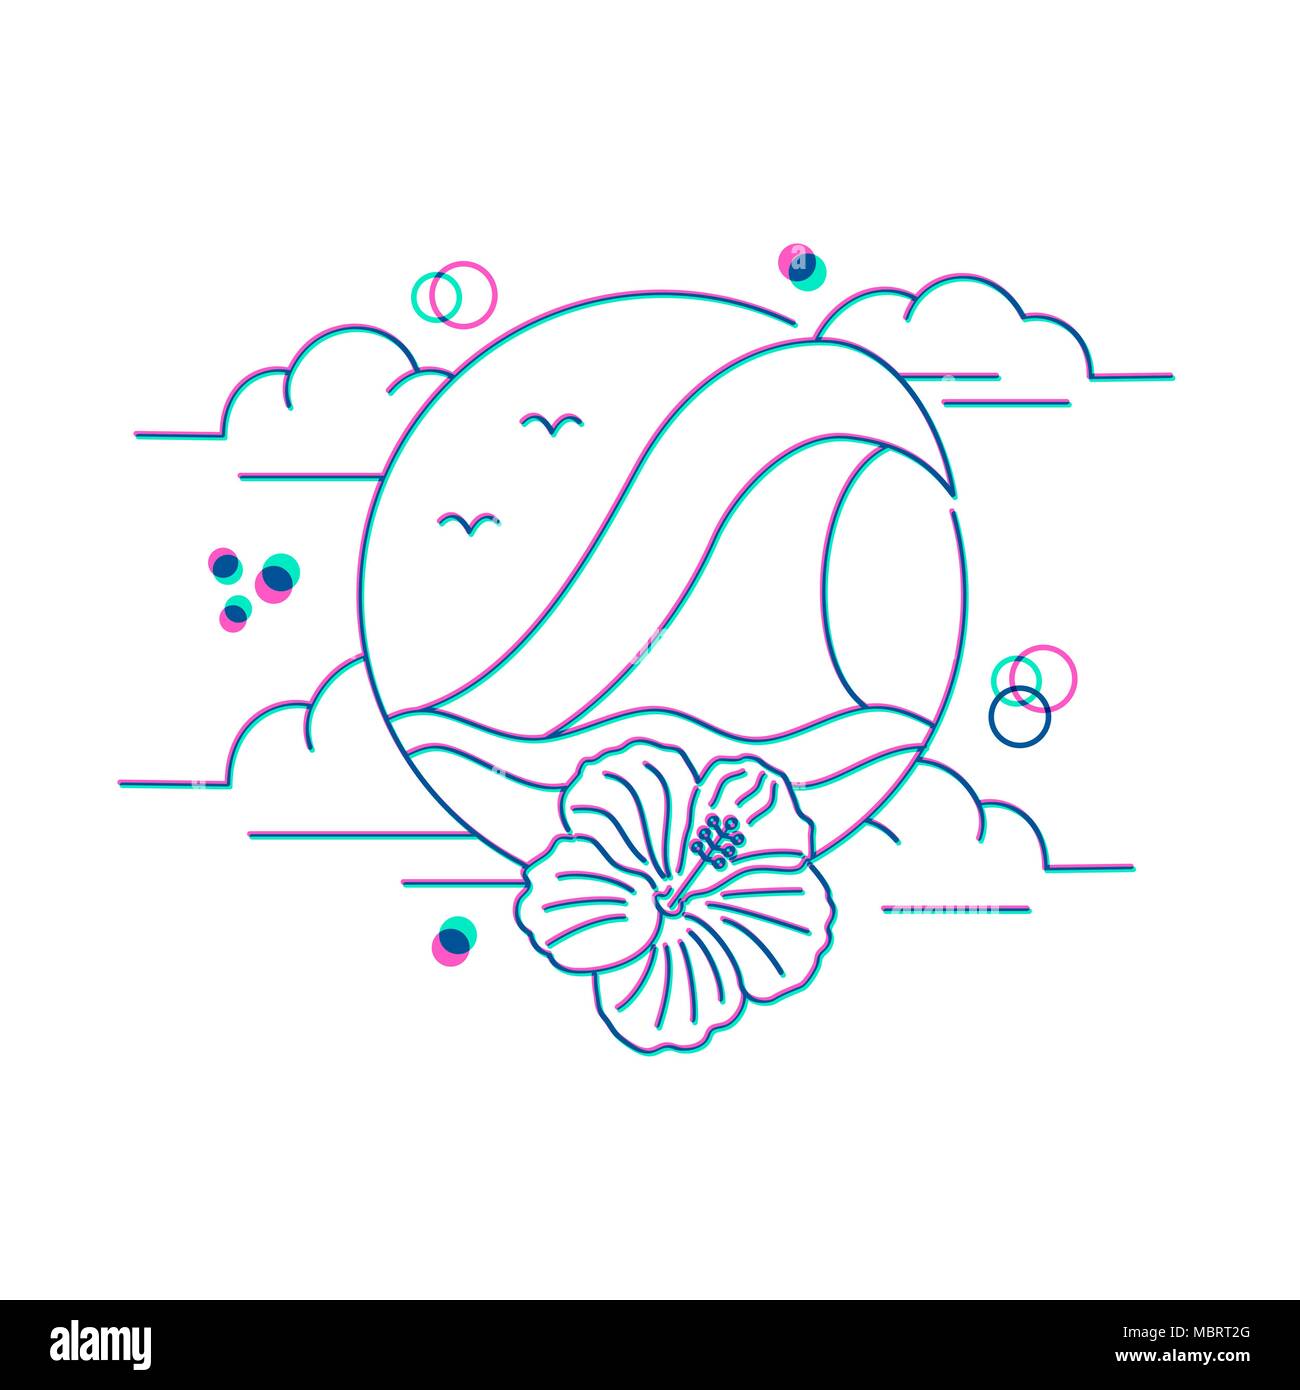 Tropischer Sommer Urlaub Design mit Hibiskus Blume und die Wellen des Ozeans. Retro Strand Konzept Symbol Abbildung. EPS 10 Vektor. Stock Vektor